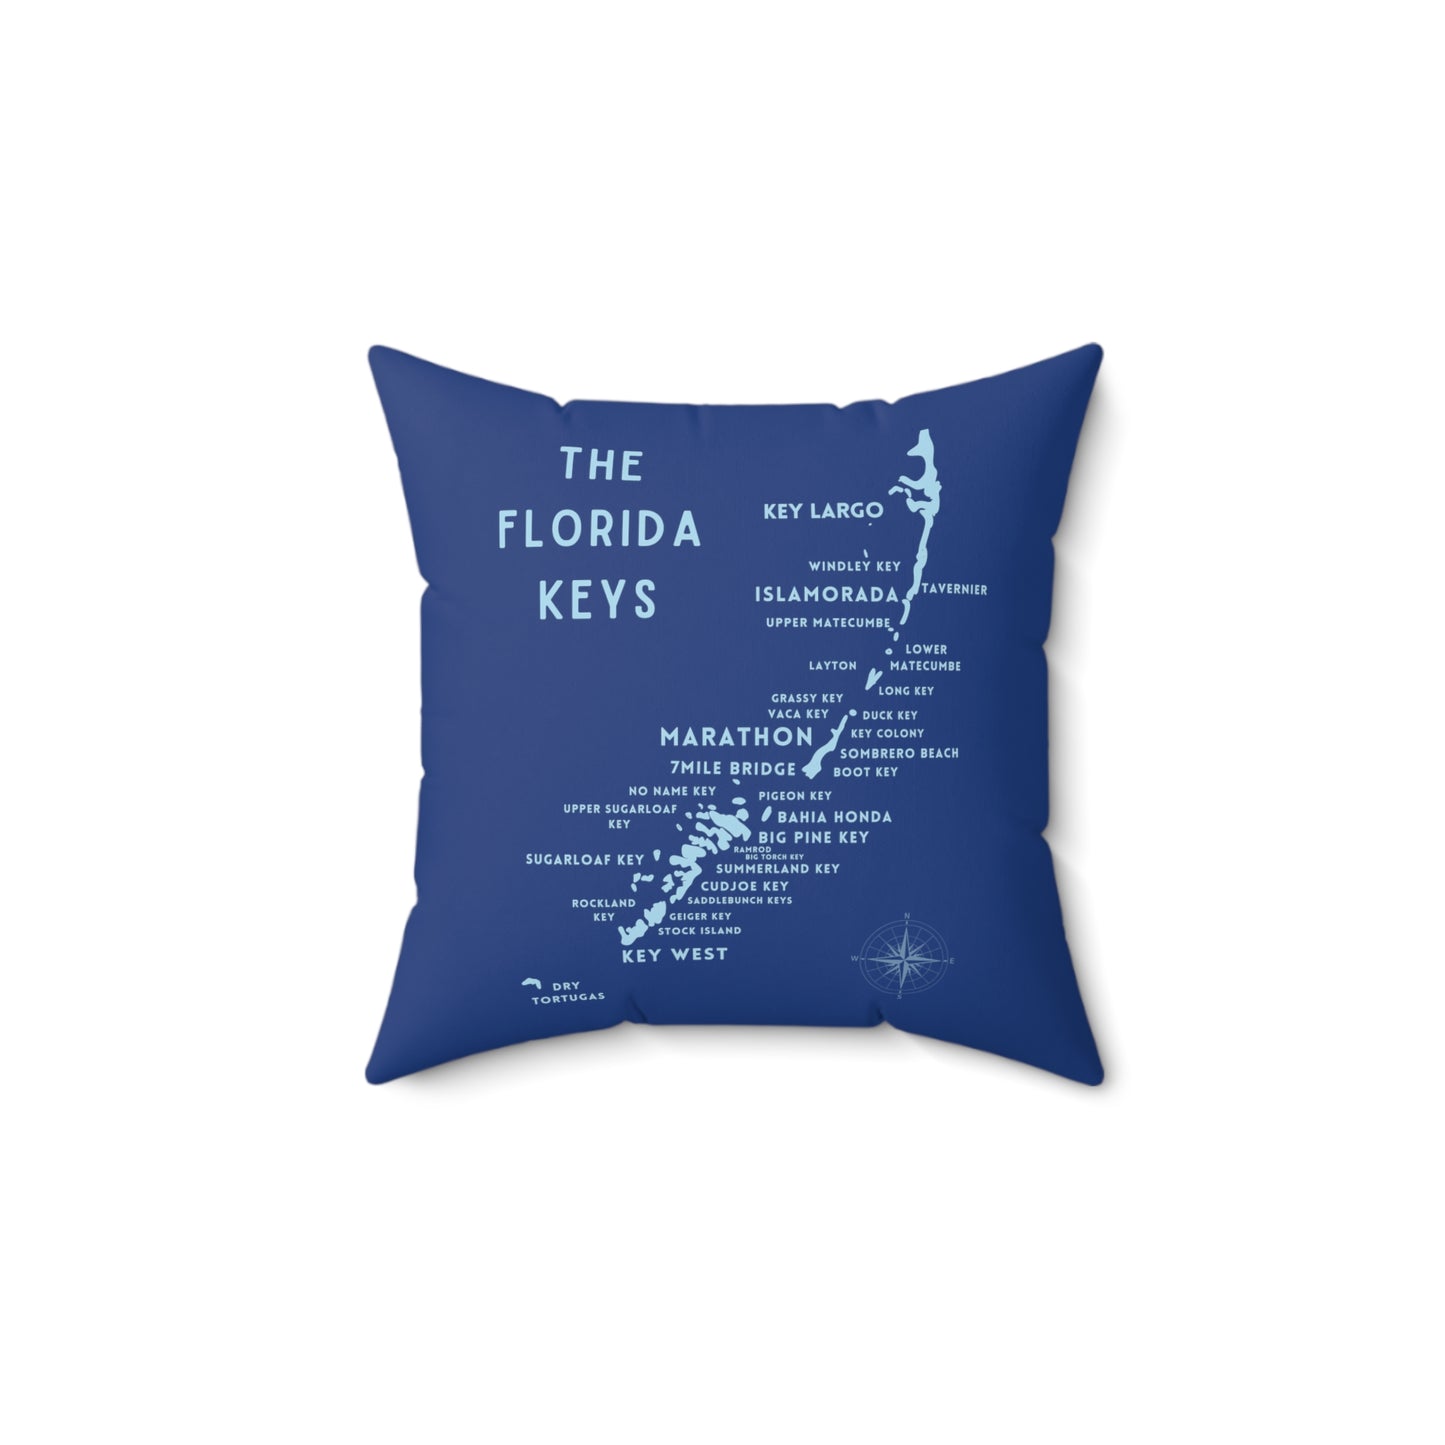 Florida Keys Map Gift - throw pillow - four sizes